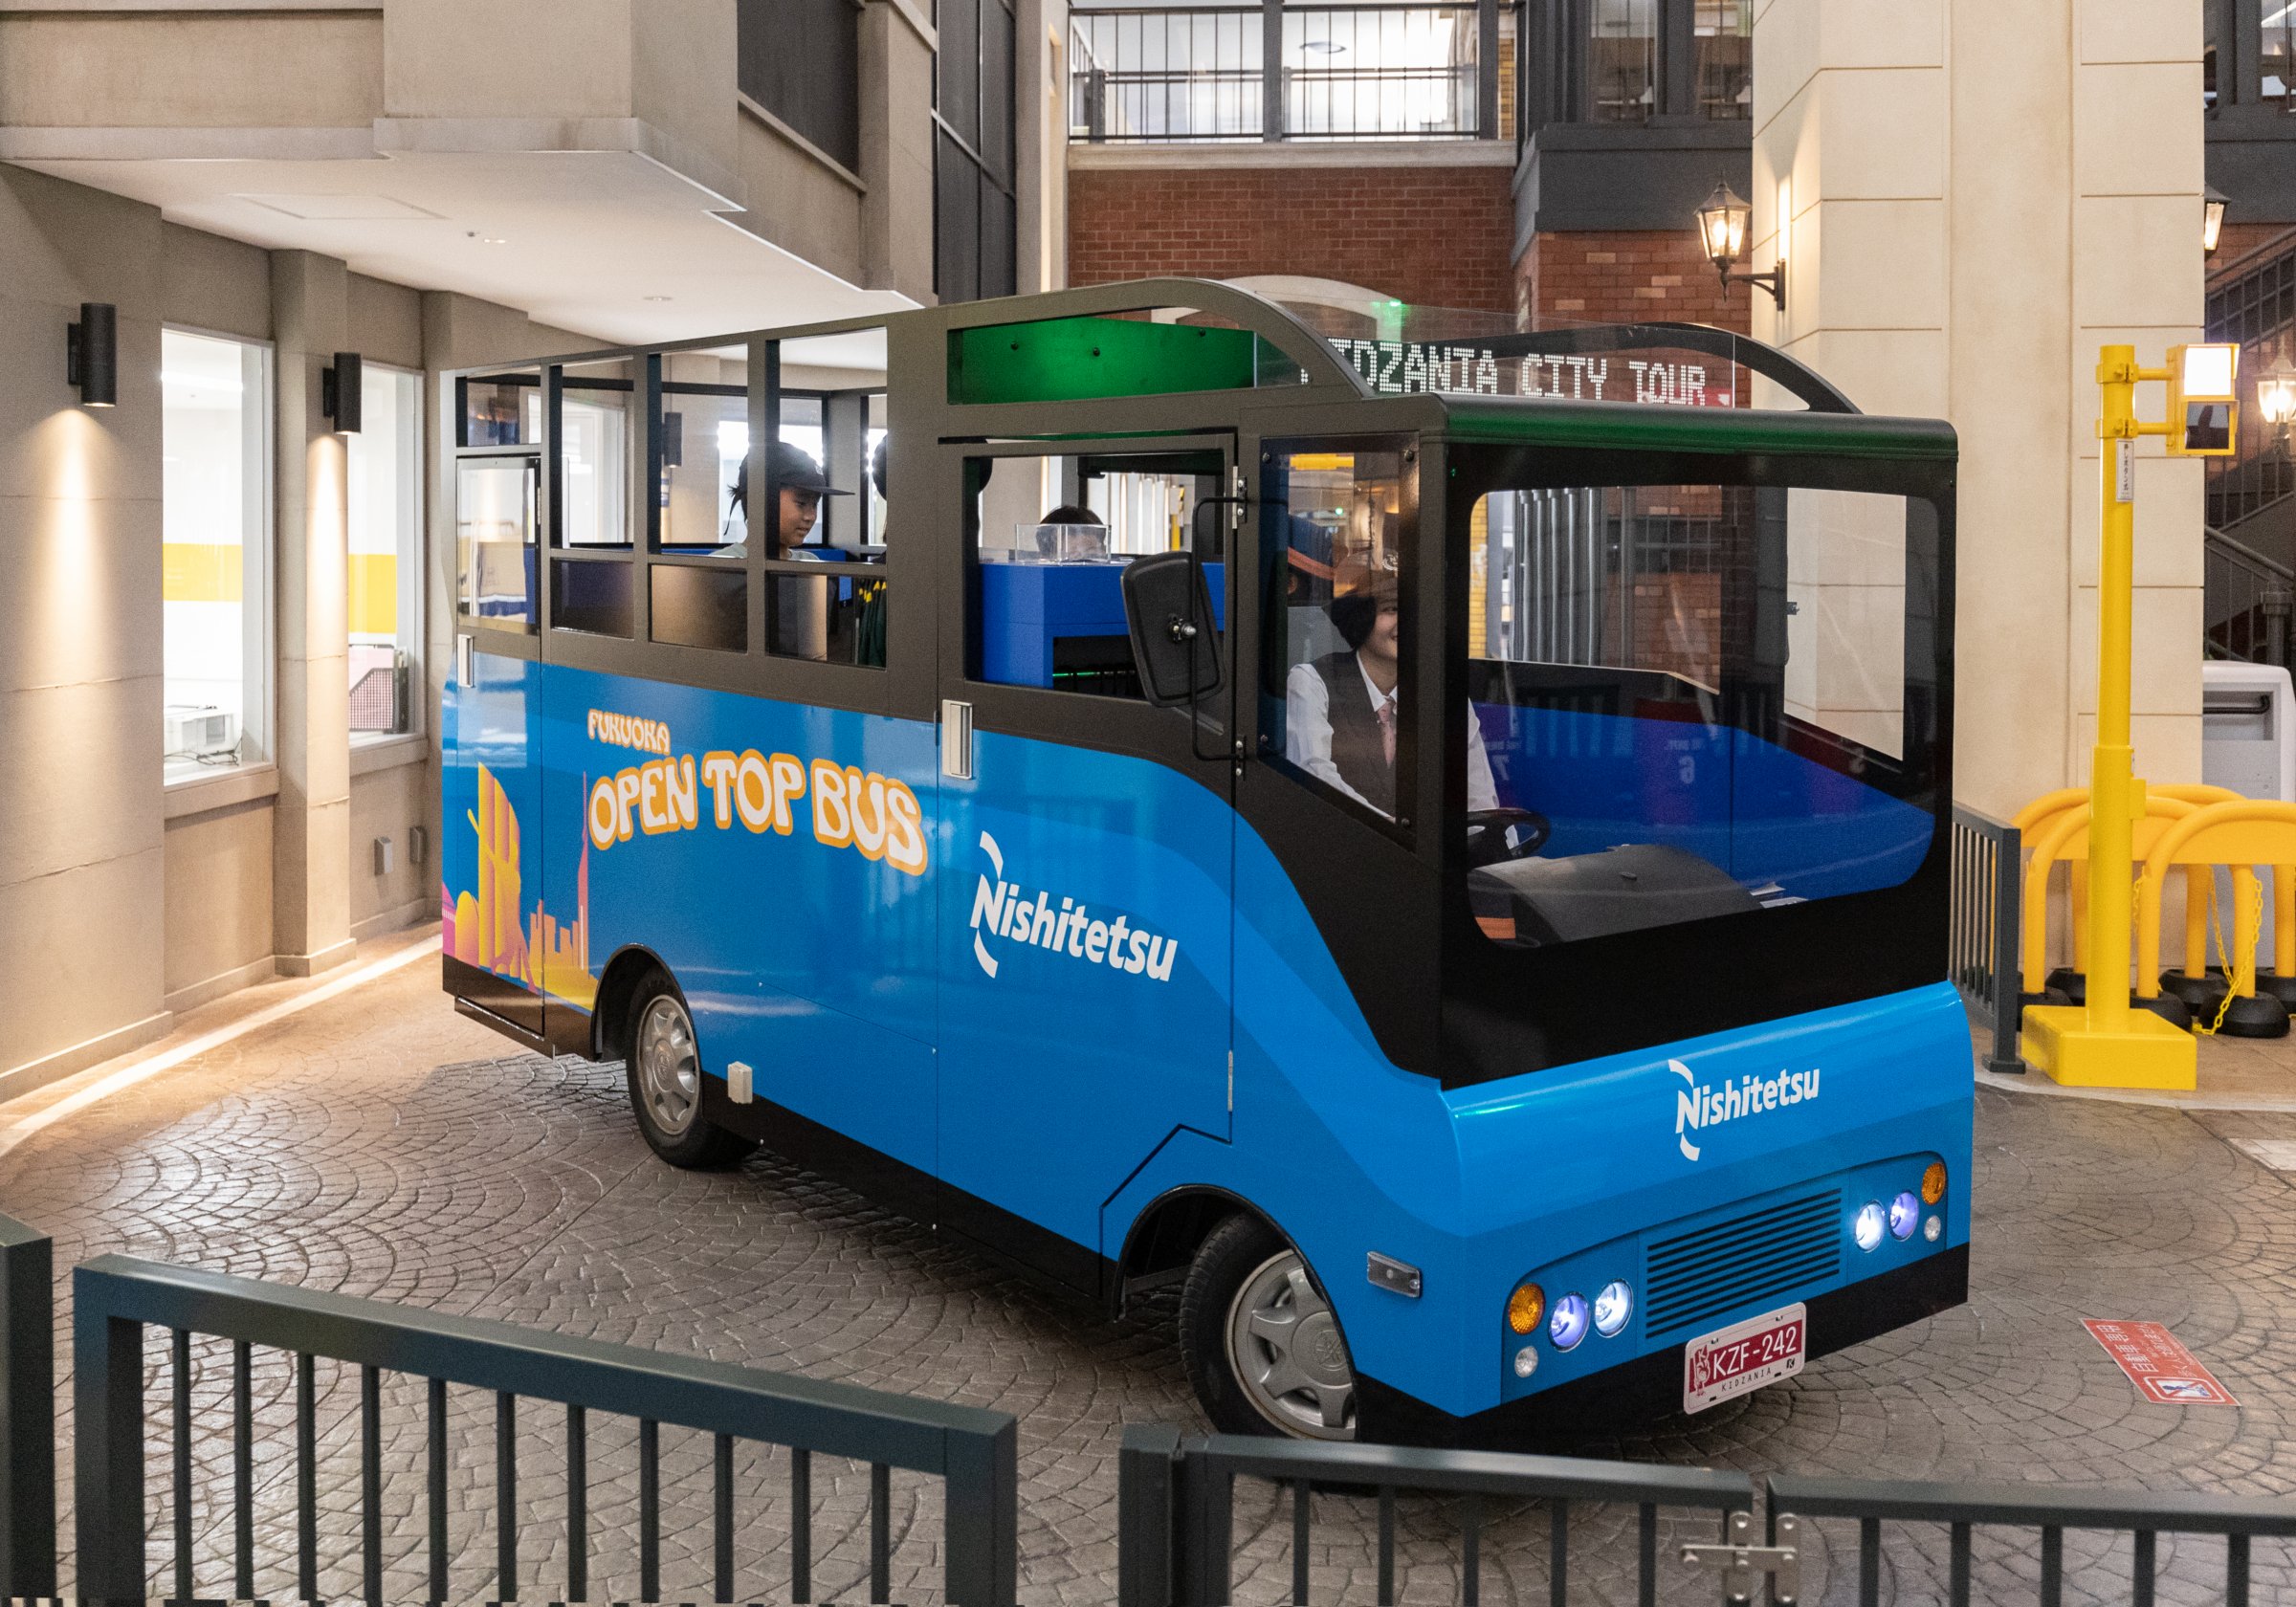 こども達に憧れのお仕事体験を！
オープントップバスのバスアナ
体験に密着＠キッザニア福岡